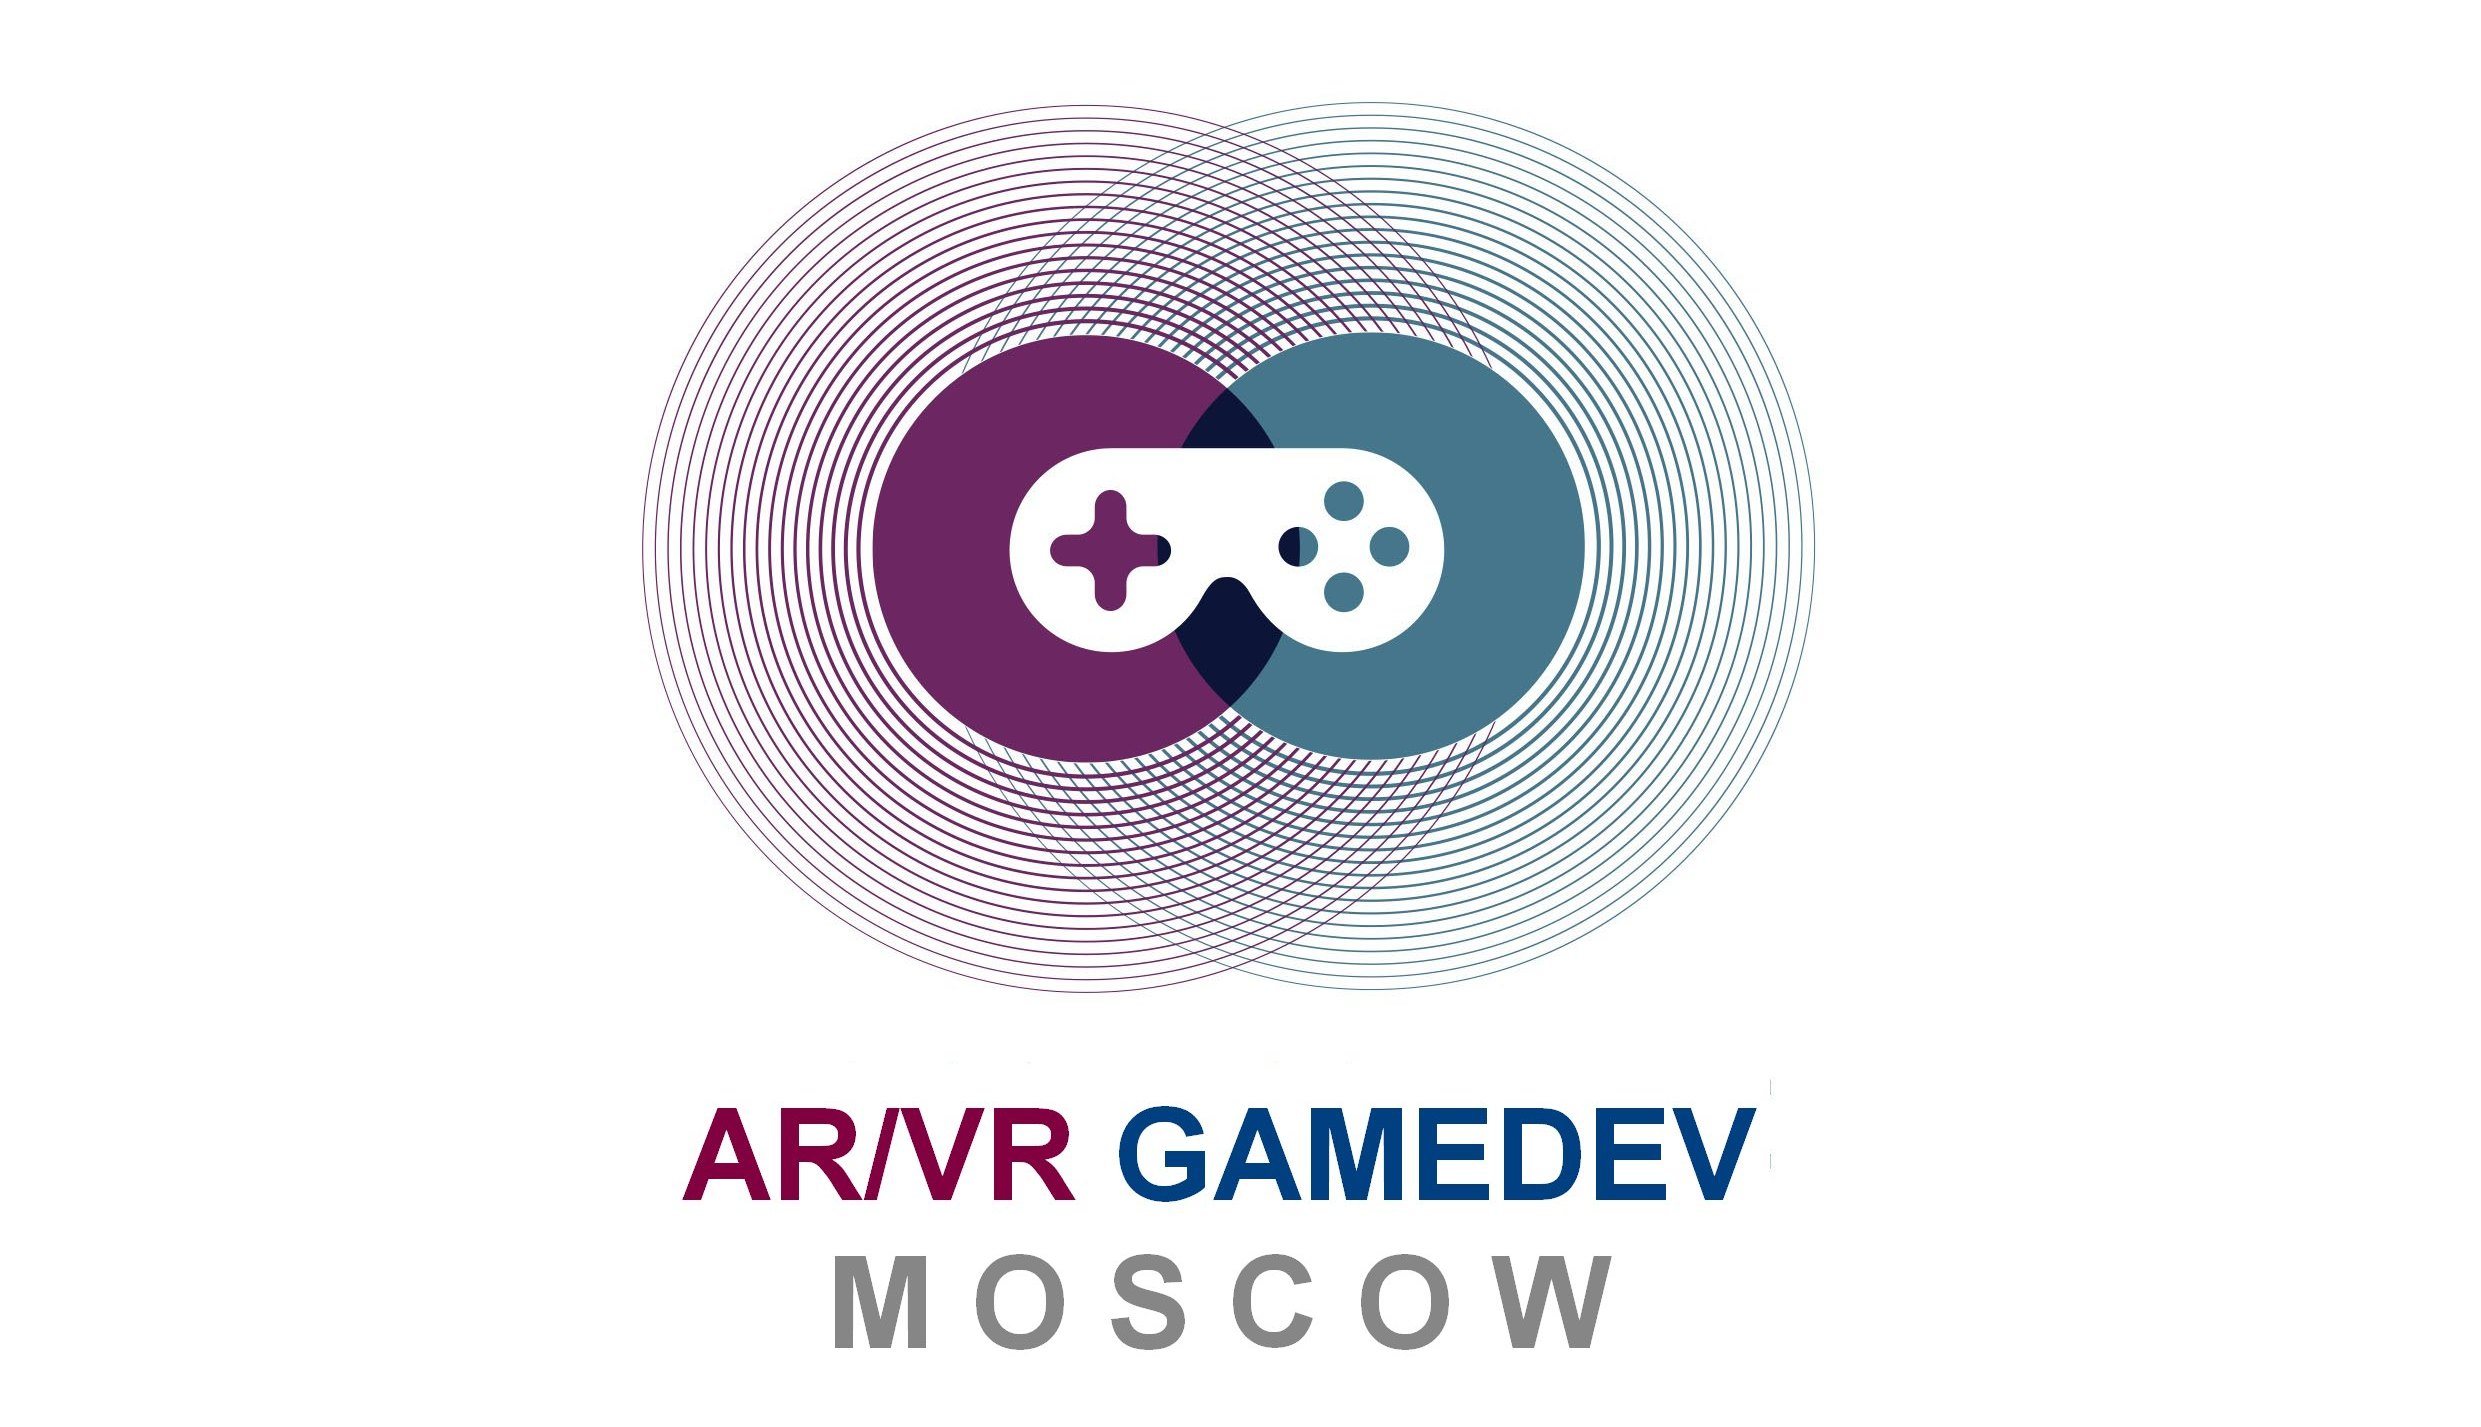 AR/VR Gamedev Moscow: ваш билет в мир игр виртуальной реальности